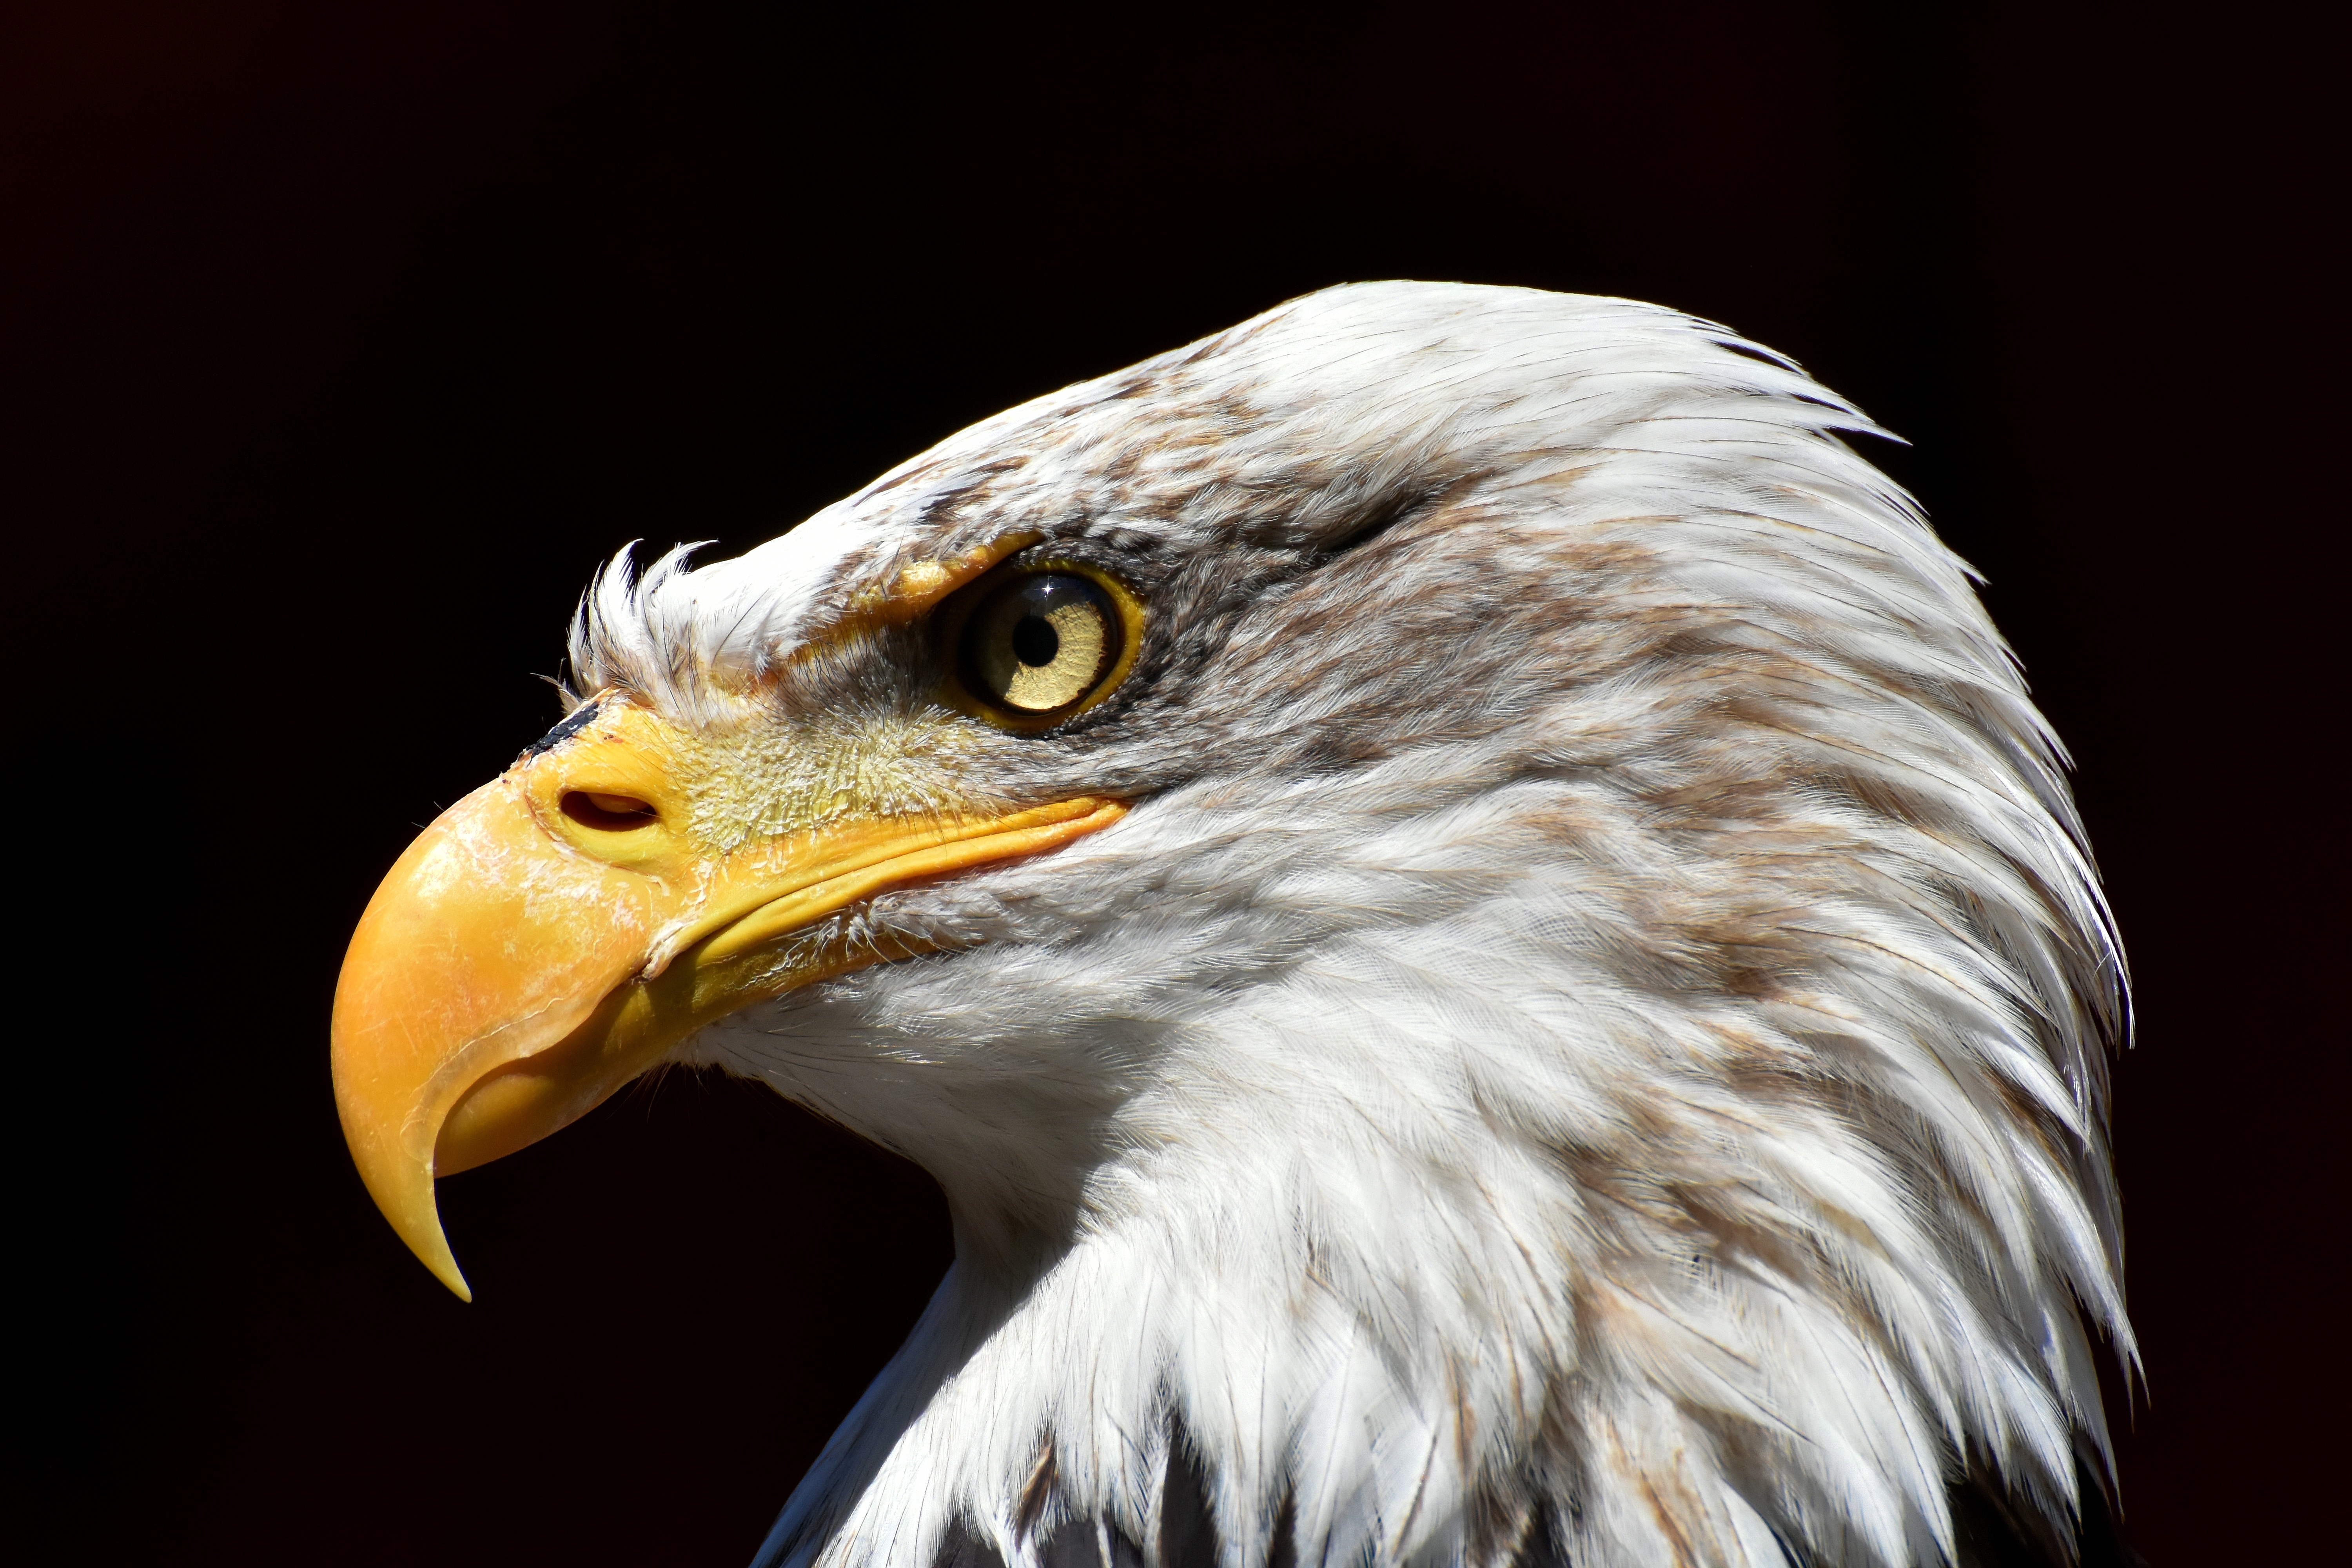 Fondos de Pantalla Cabeza de Águila Blanca y Marrón, Imágenes y Fotos Gratis